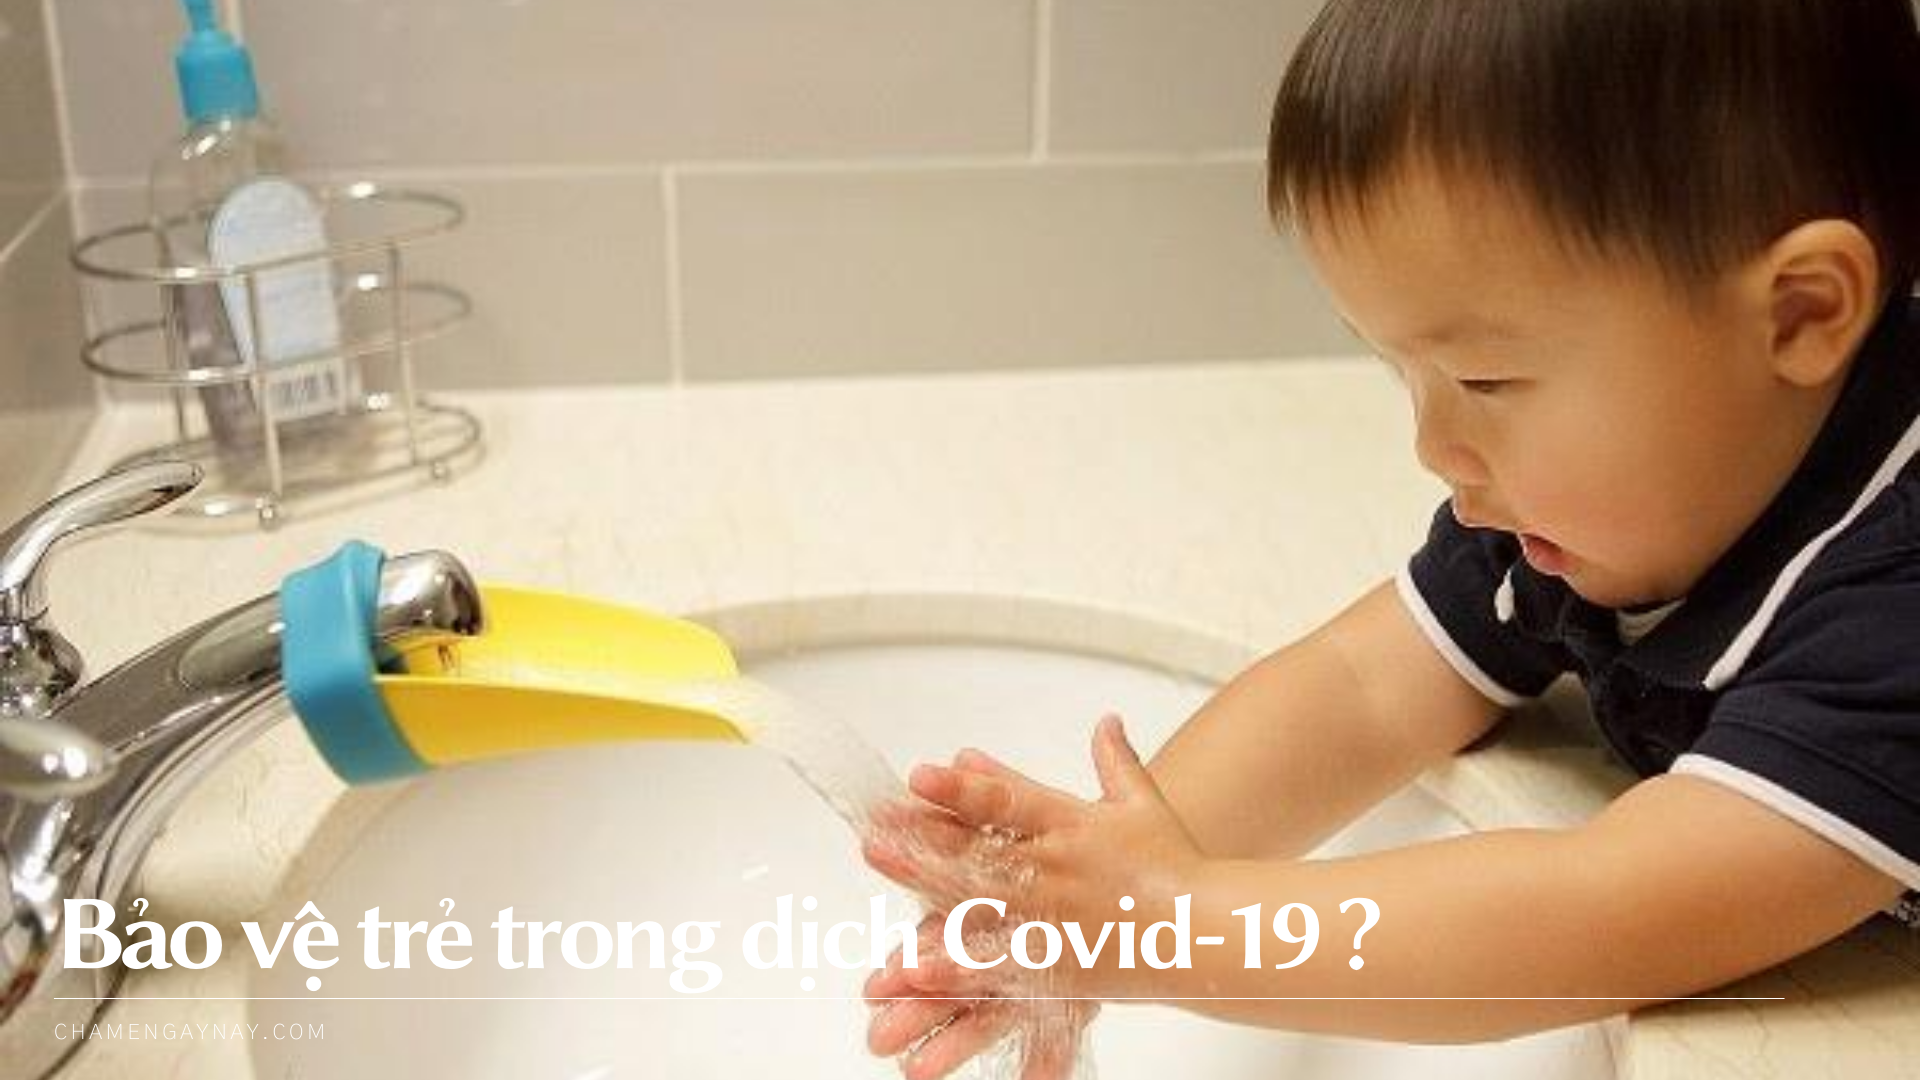 Bảo vệ trẻ Covid-19